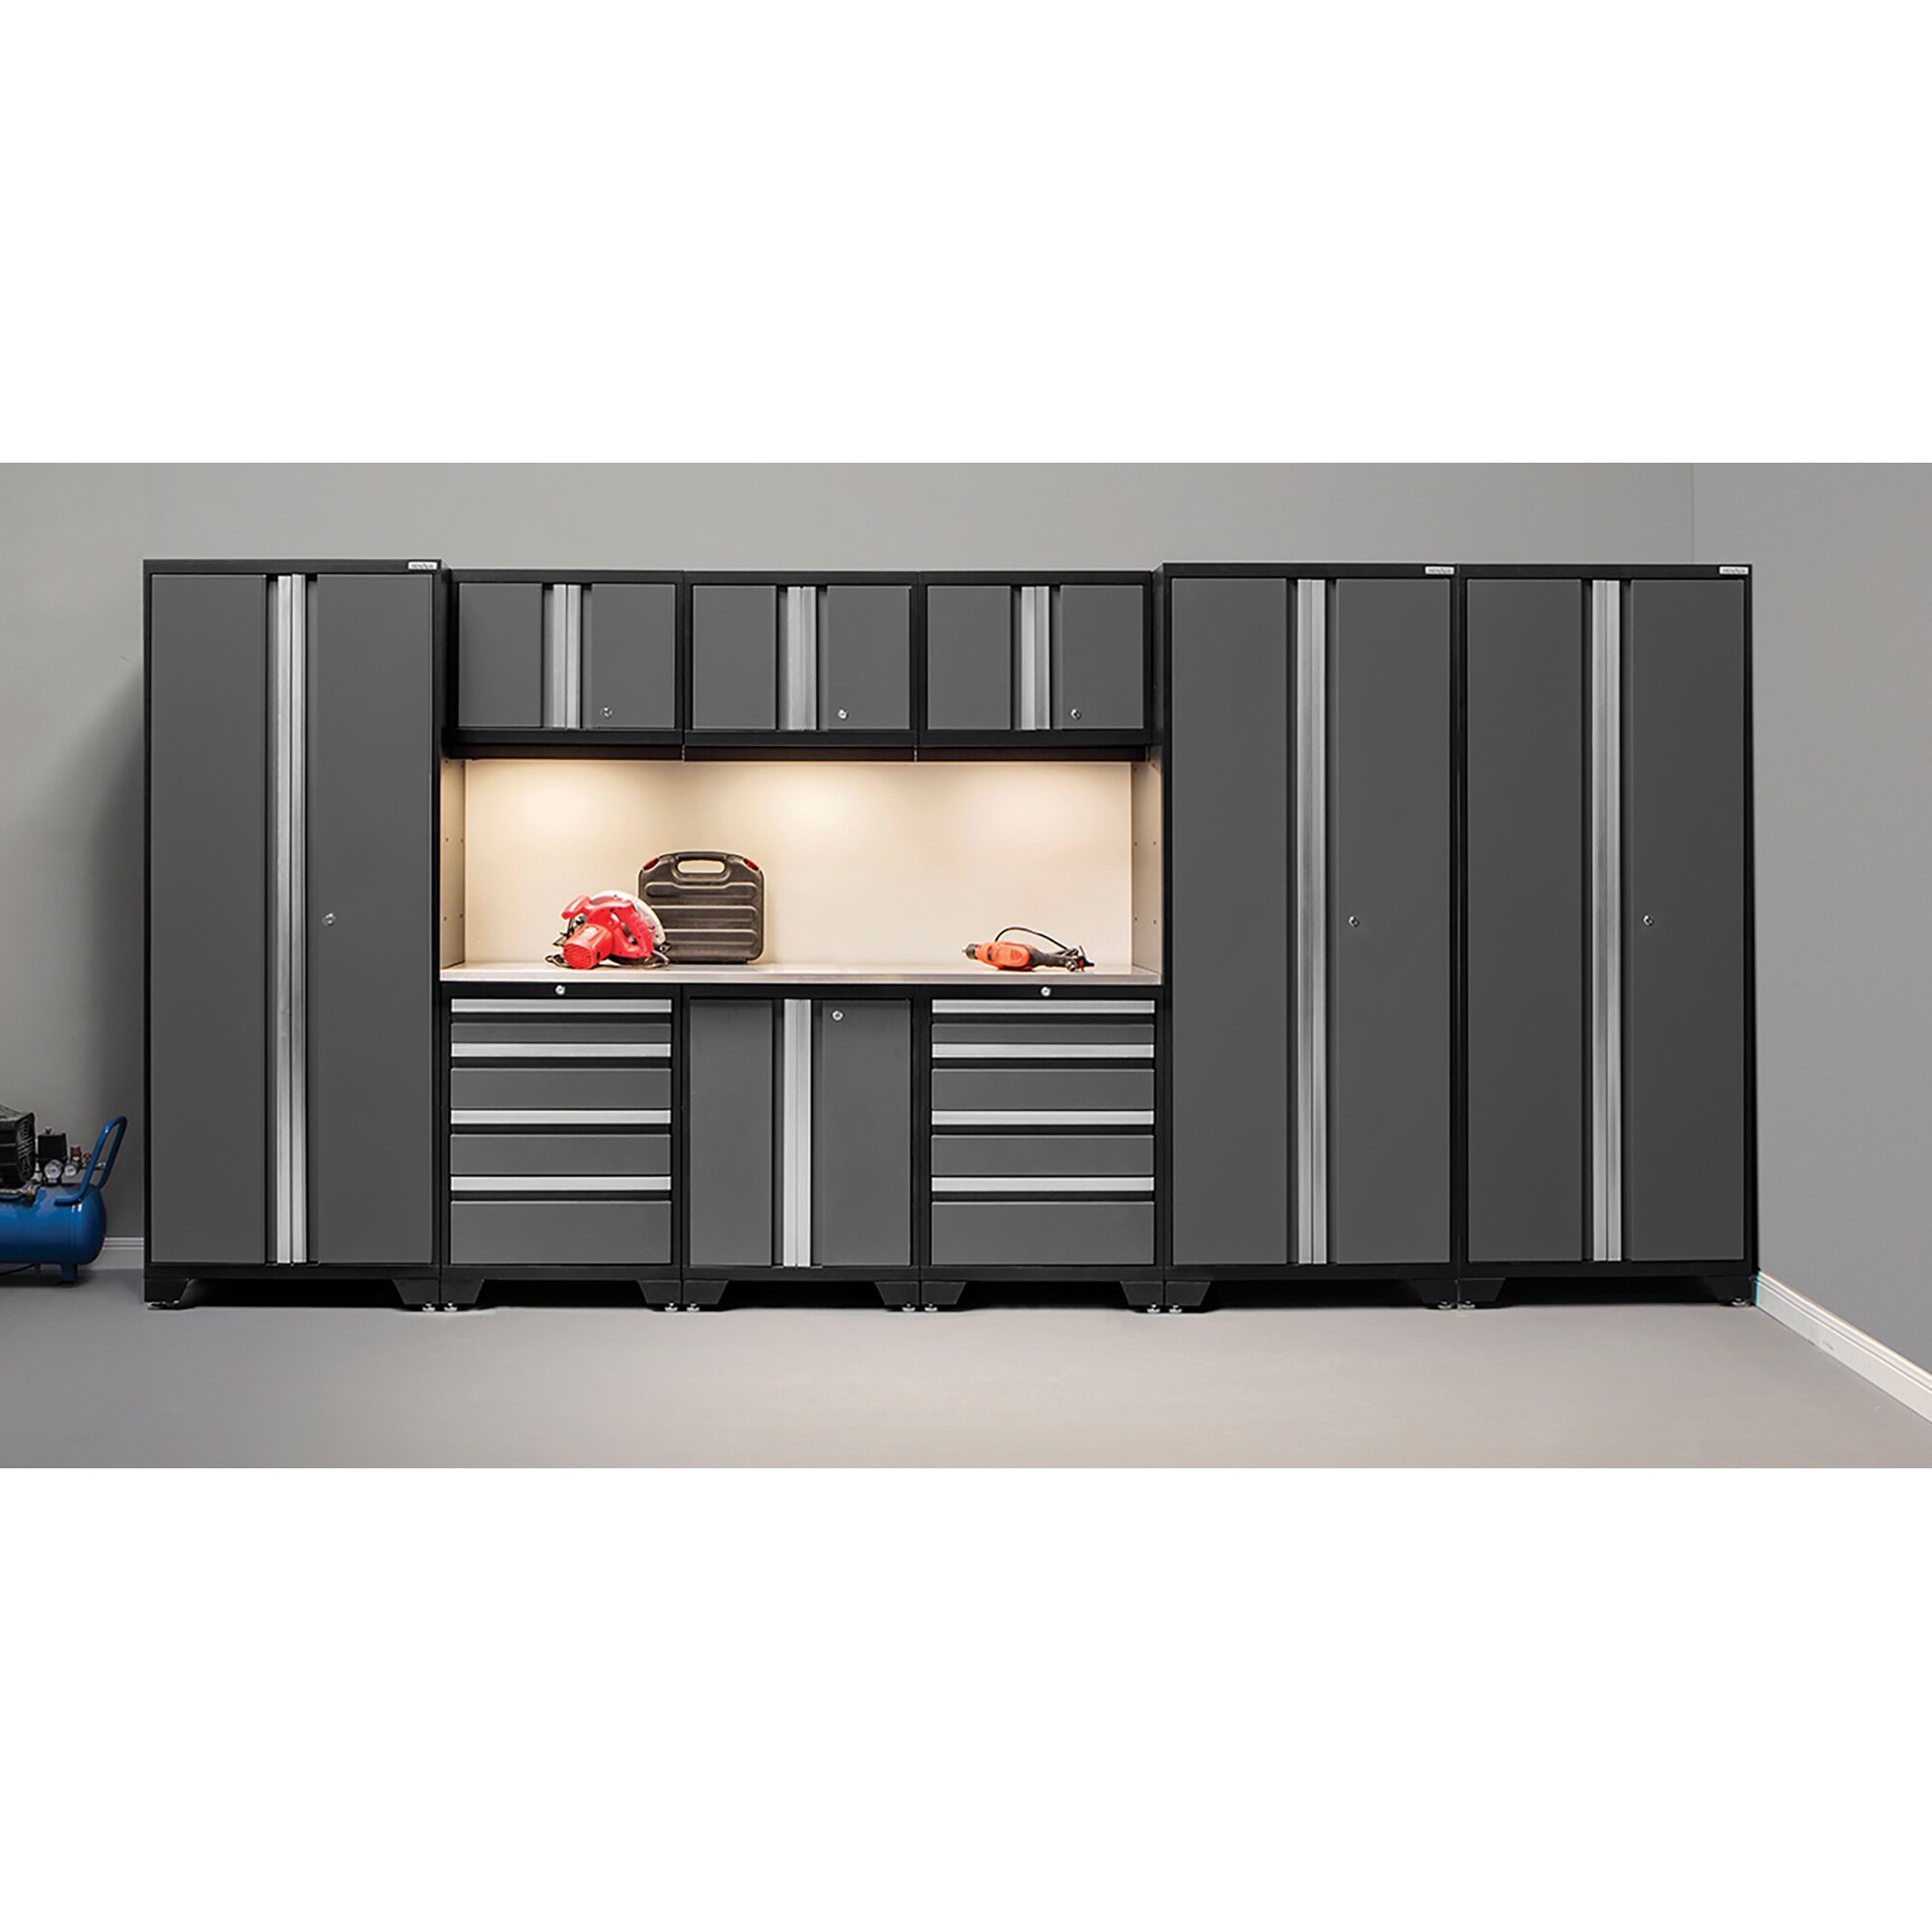 Garage Organization Cabinets
 NewAge Products Bold 3 0 Series 10 Piece Garage Storage